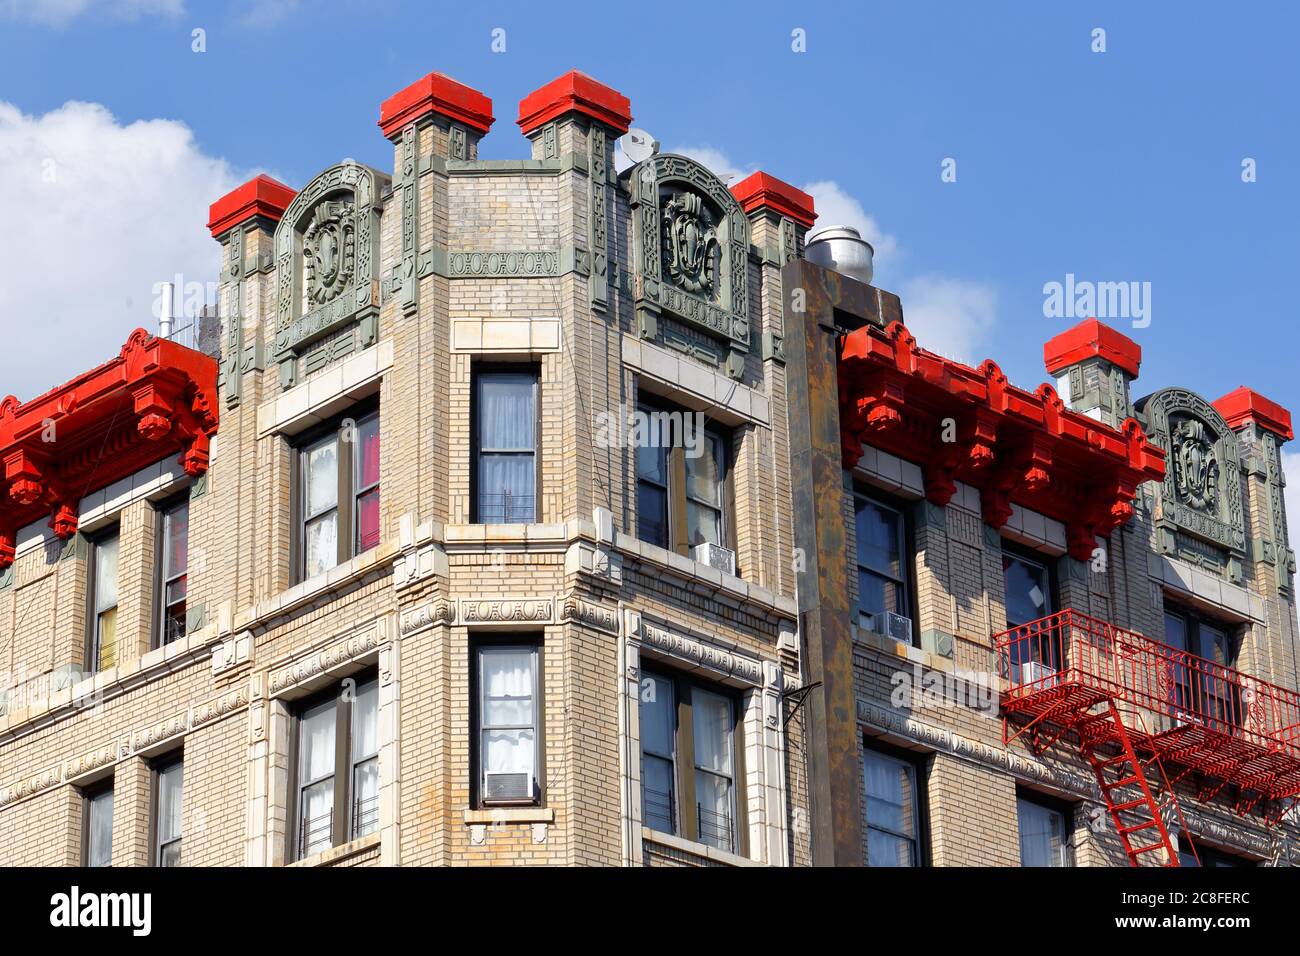 Toit orné d'un immeuble 401 E 154th St dans le quartier Melrose du Bronx, New York. Construit en 1911 Banque D'Images